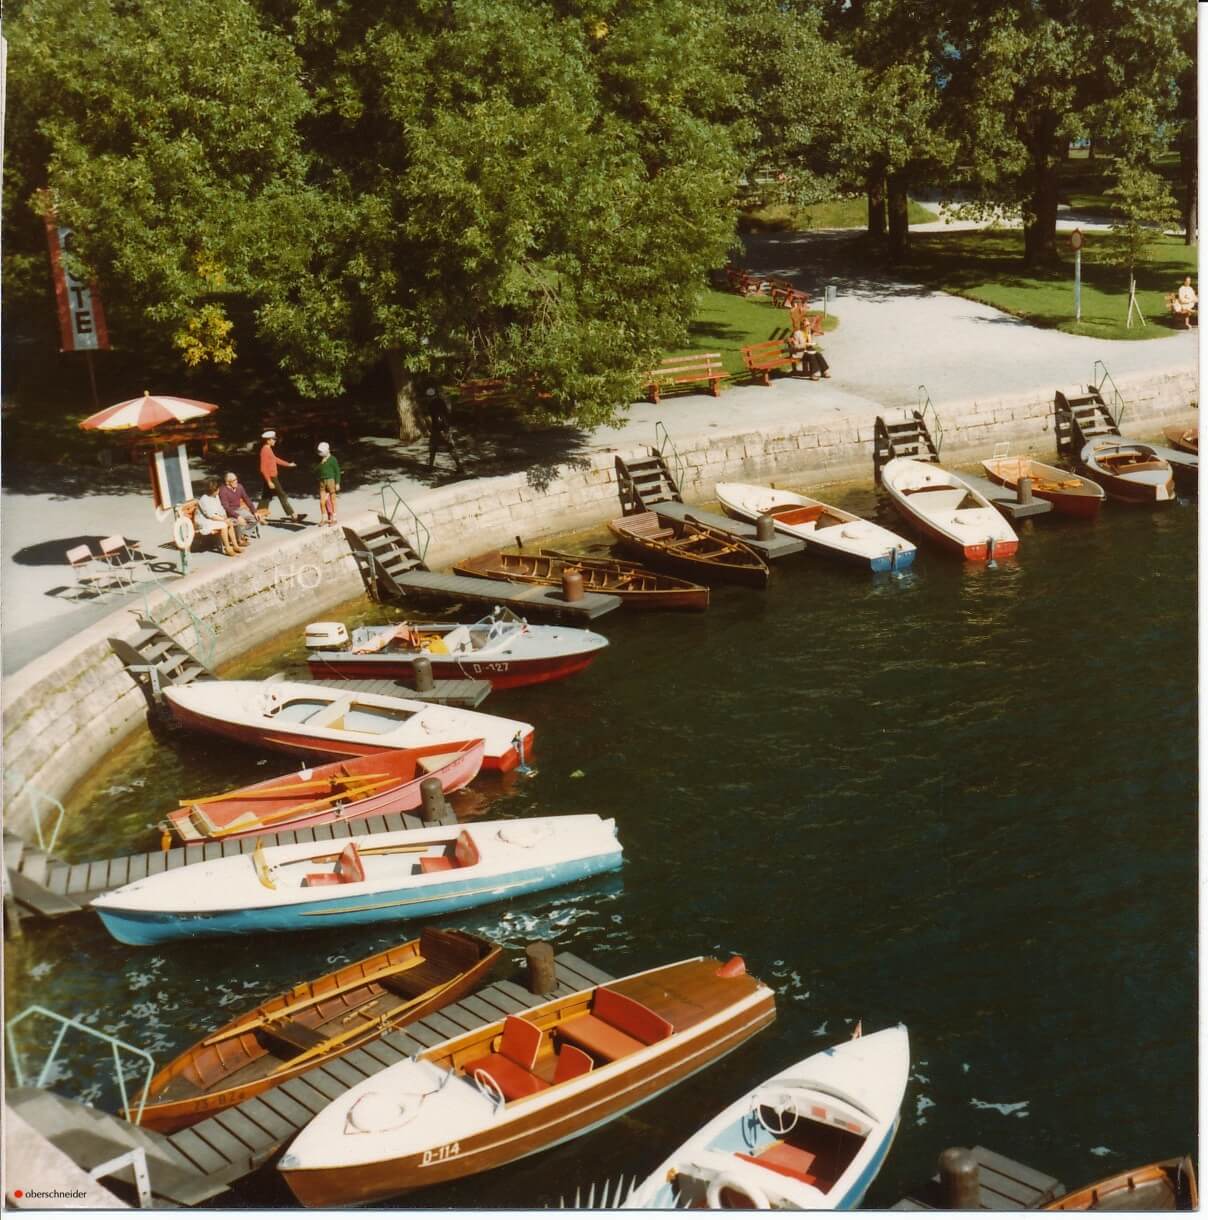 Bootsvermietung Oberschneider in der Oberschneiderbucht am Zeller See, Foto von Hans Oberschneider